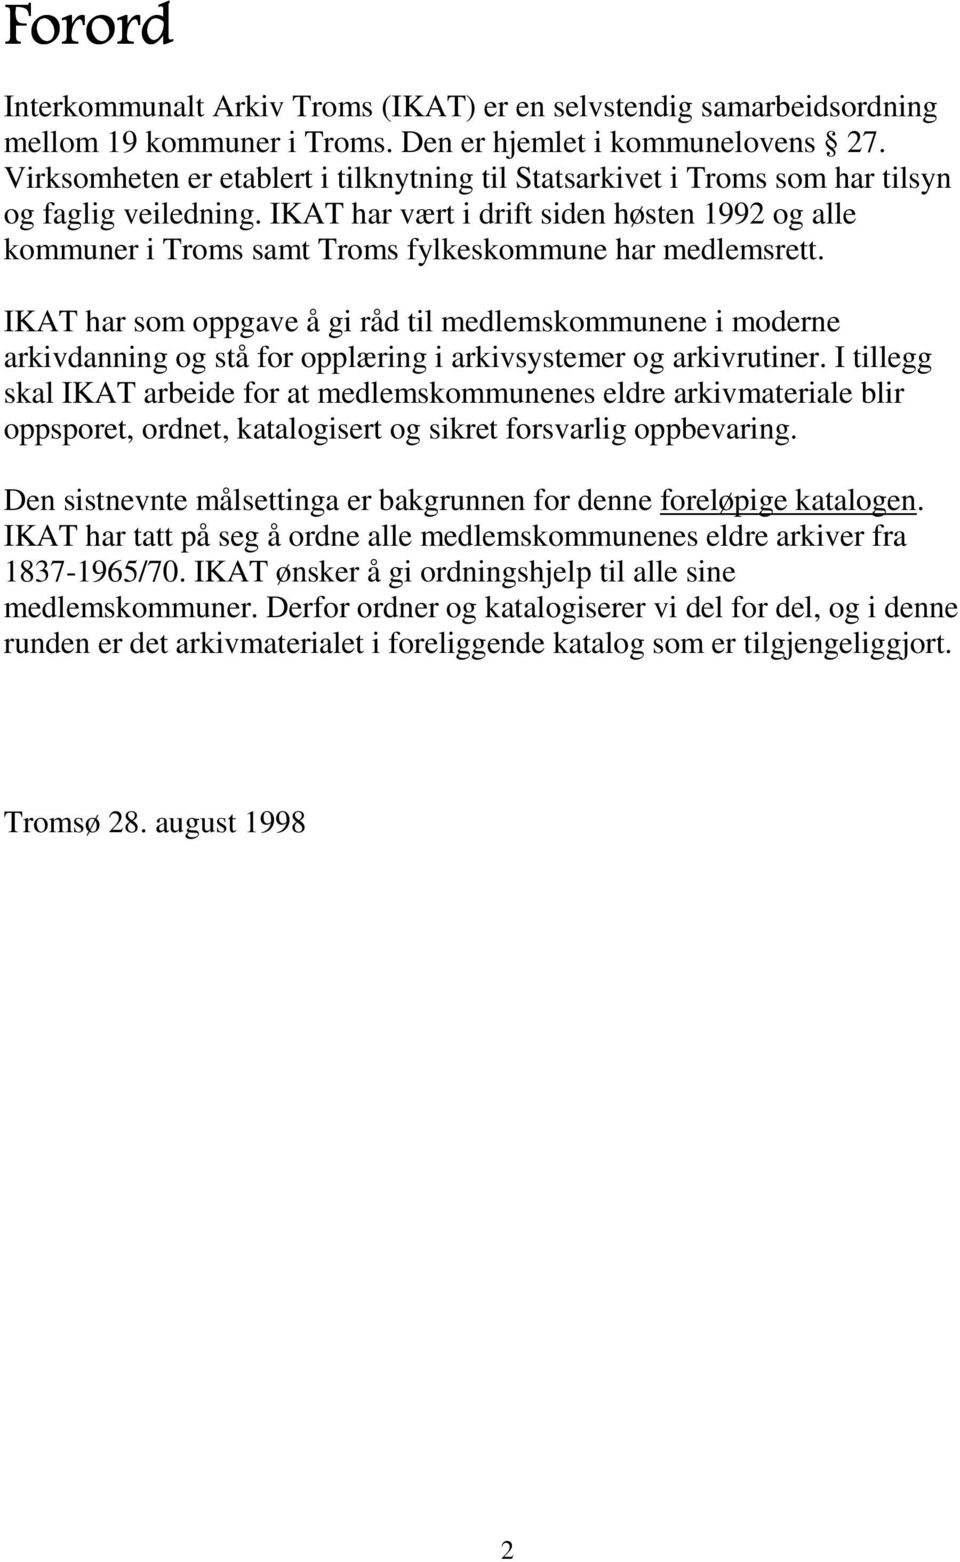 IKAT har vært i drift siden høsten 1992 og alle kommuner i Troms samt Troms fylkeskommune har medlemsrett.